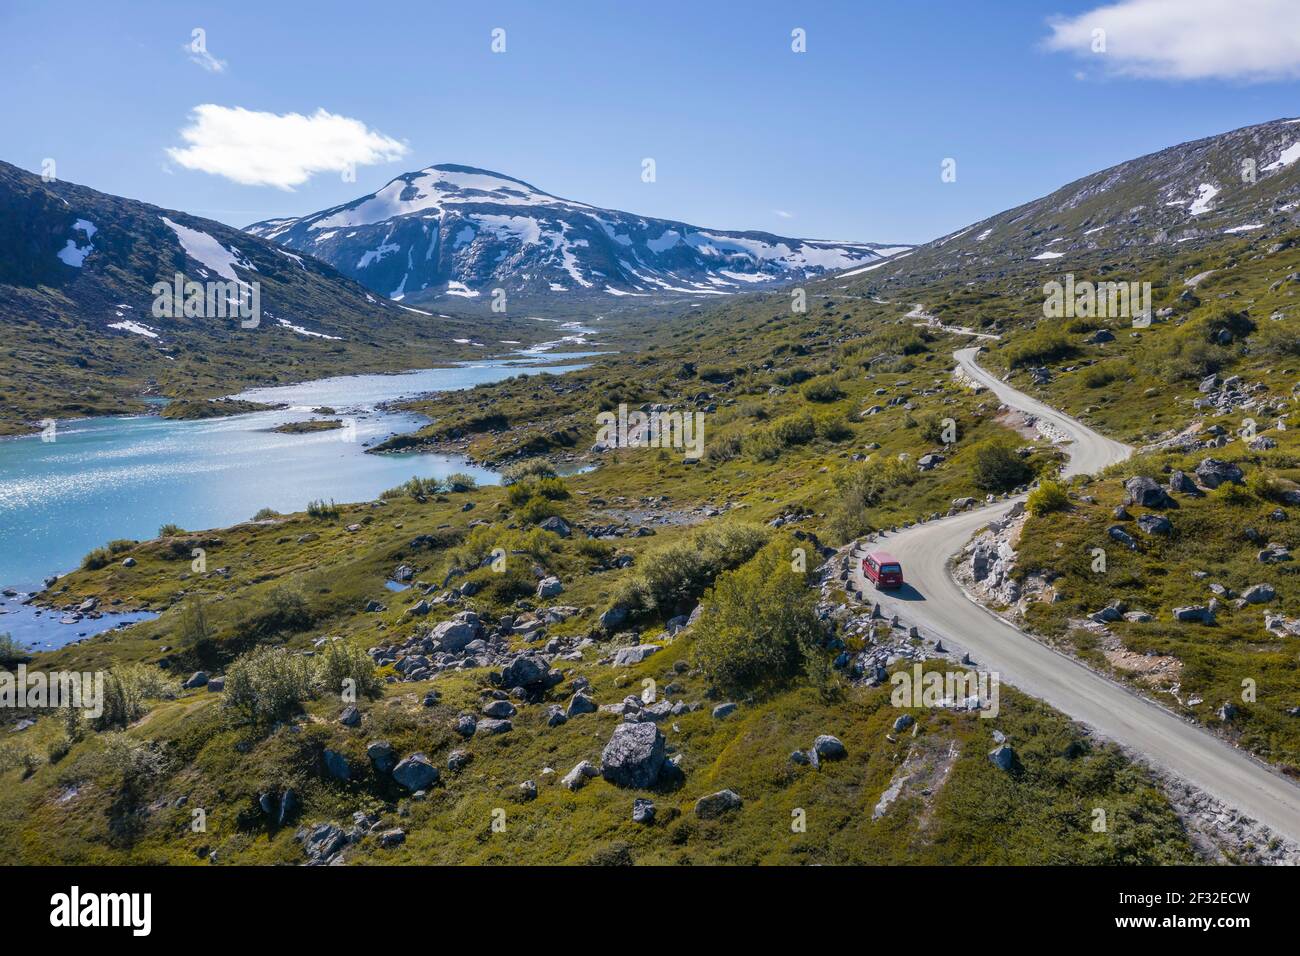 Luftbild, VW-Bus auf der Straße, türkisfarbener See und Berge, Norwegische Landschaftsroute, Gamle Strynefjellsvegen, zwischen Grotli und Videsaeter, Norwegen Stockfoto